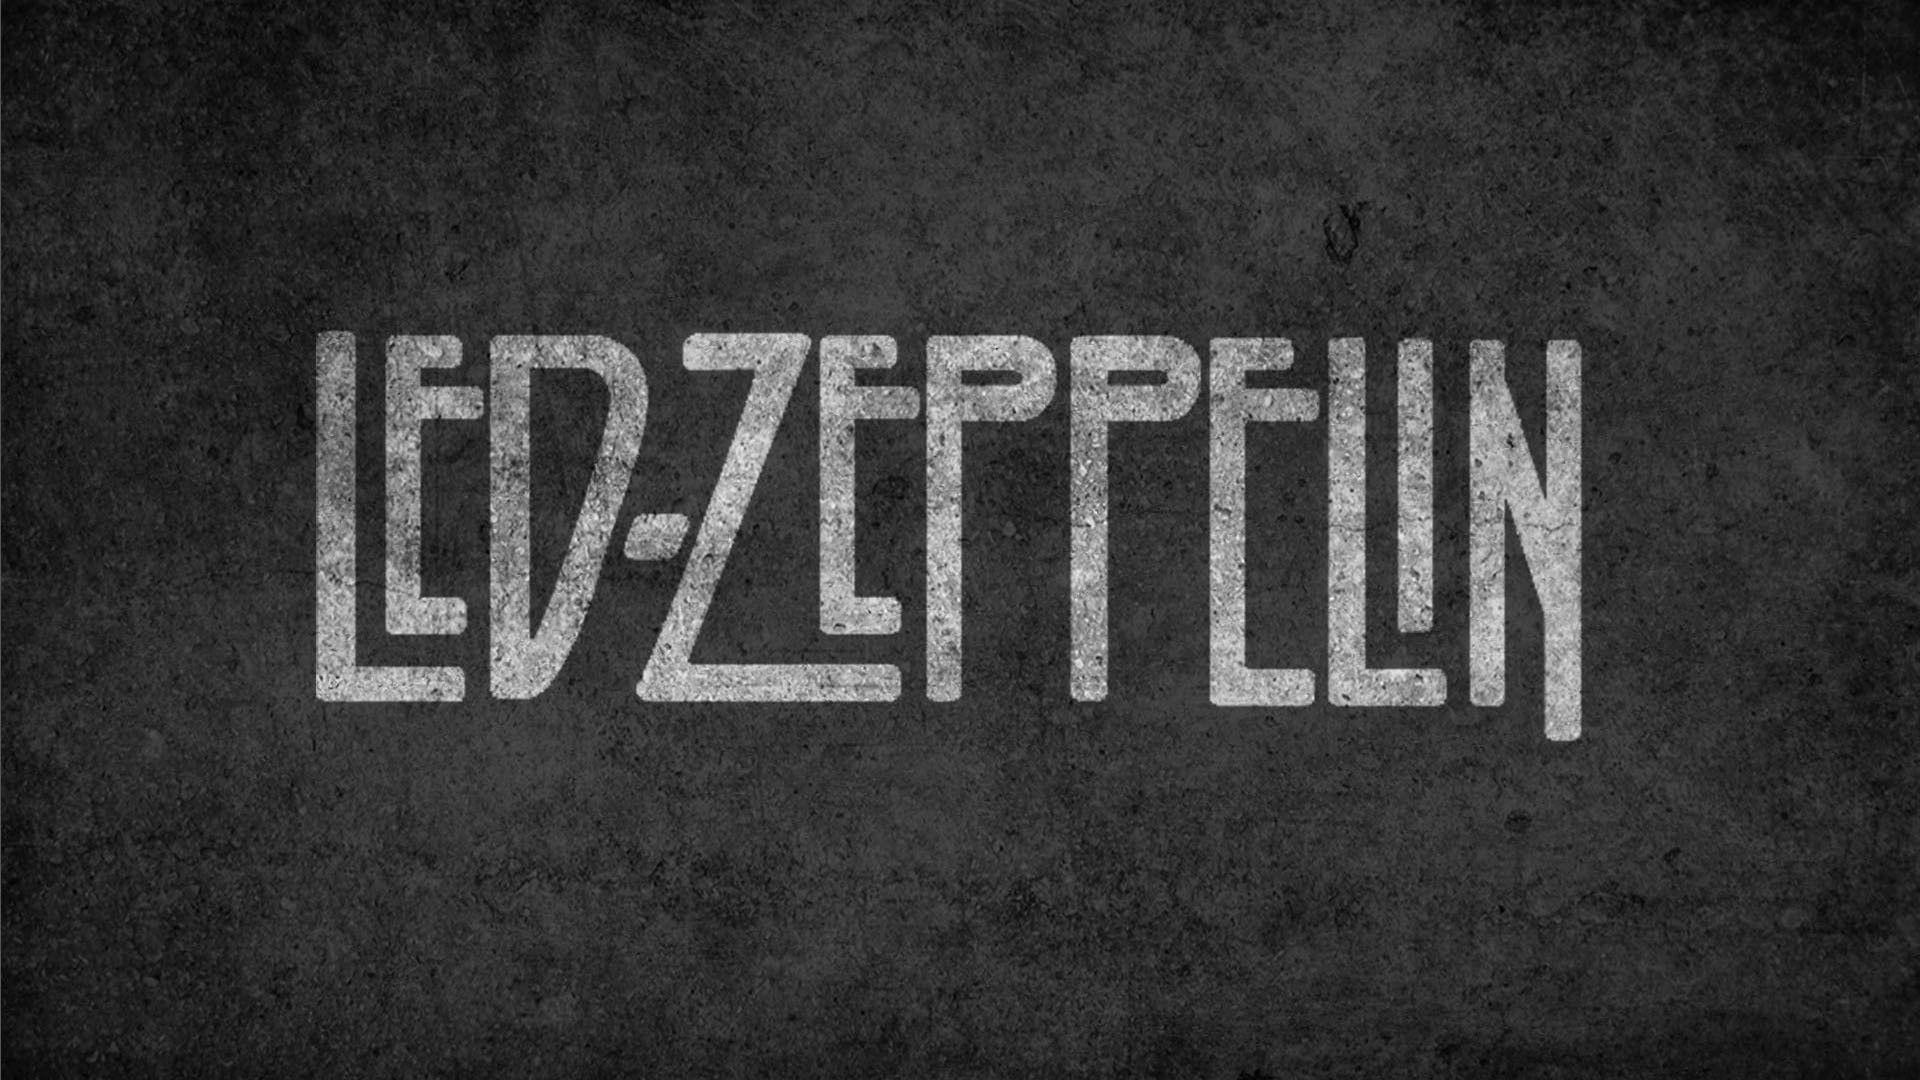 Led Zeppelin Computer Wallpapers, Desktop Backgrounds 2154x1210 Id